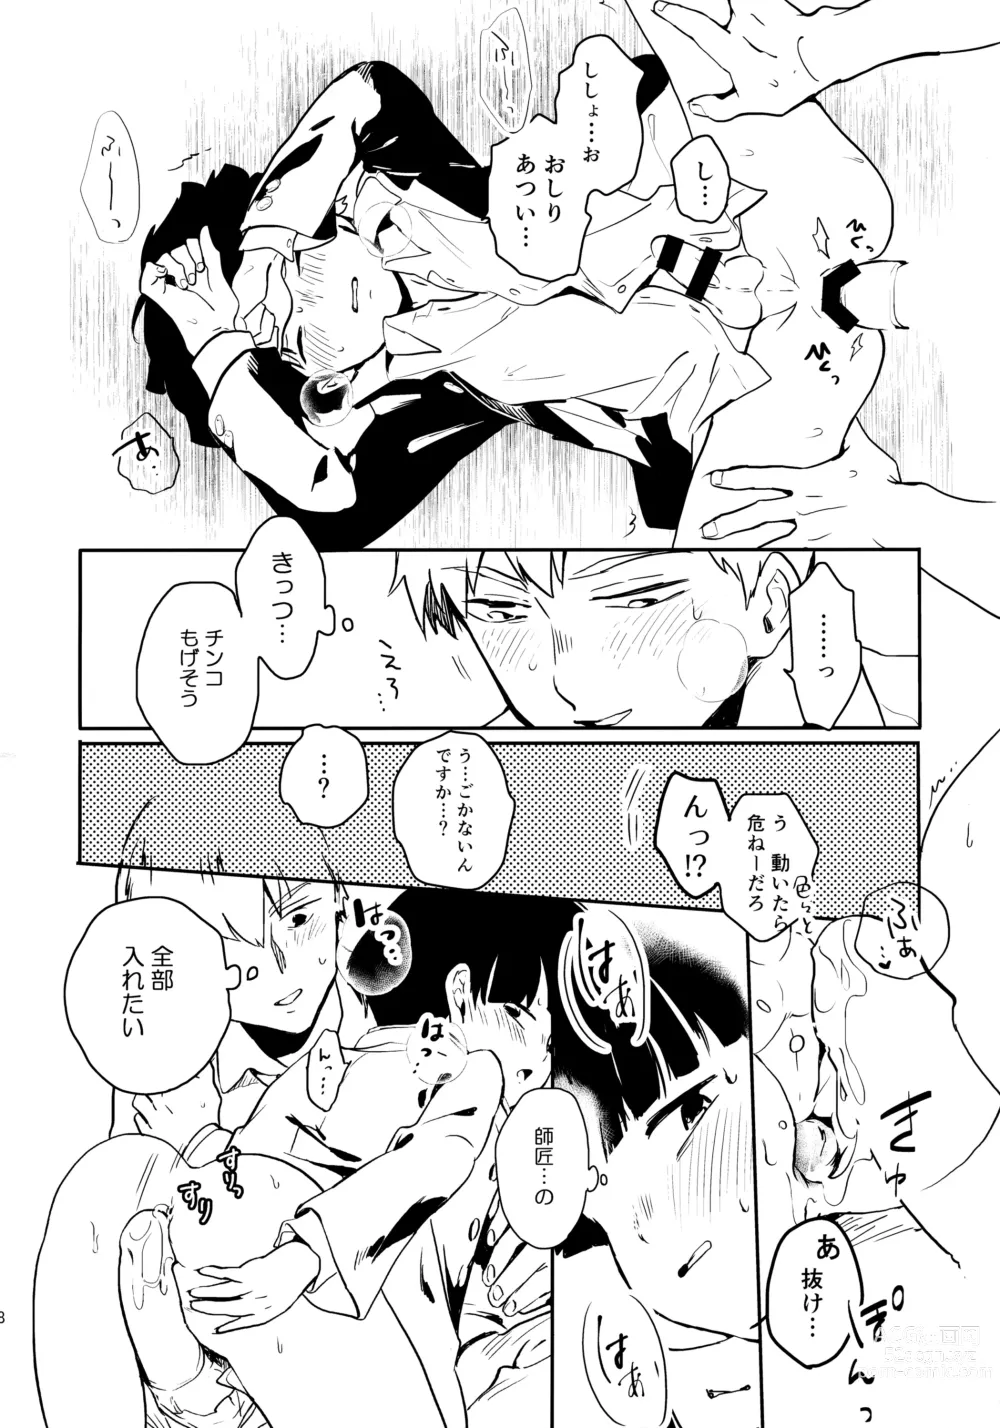 Page 19 of doujinshi Shitei Crash